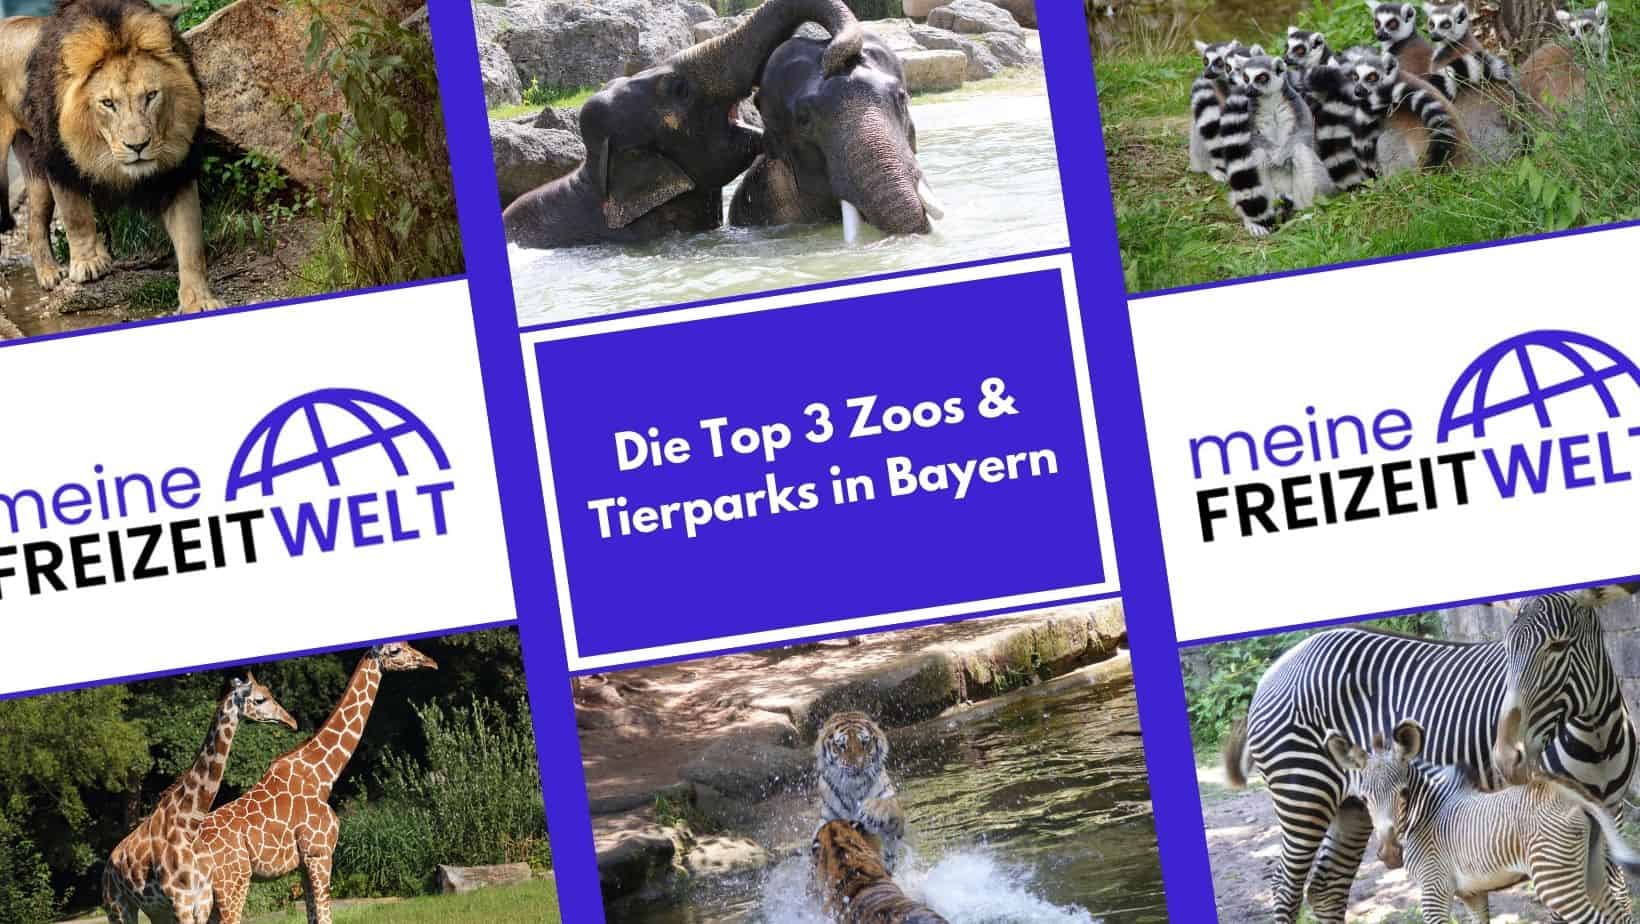 Die Top 3 Zoos & Tierparks in Bayern